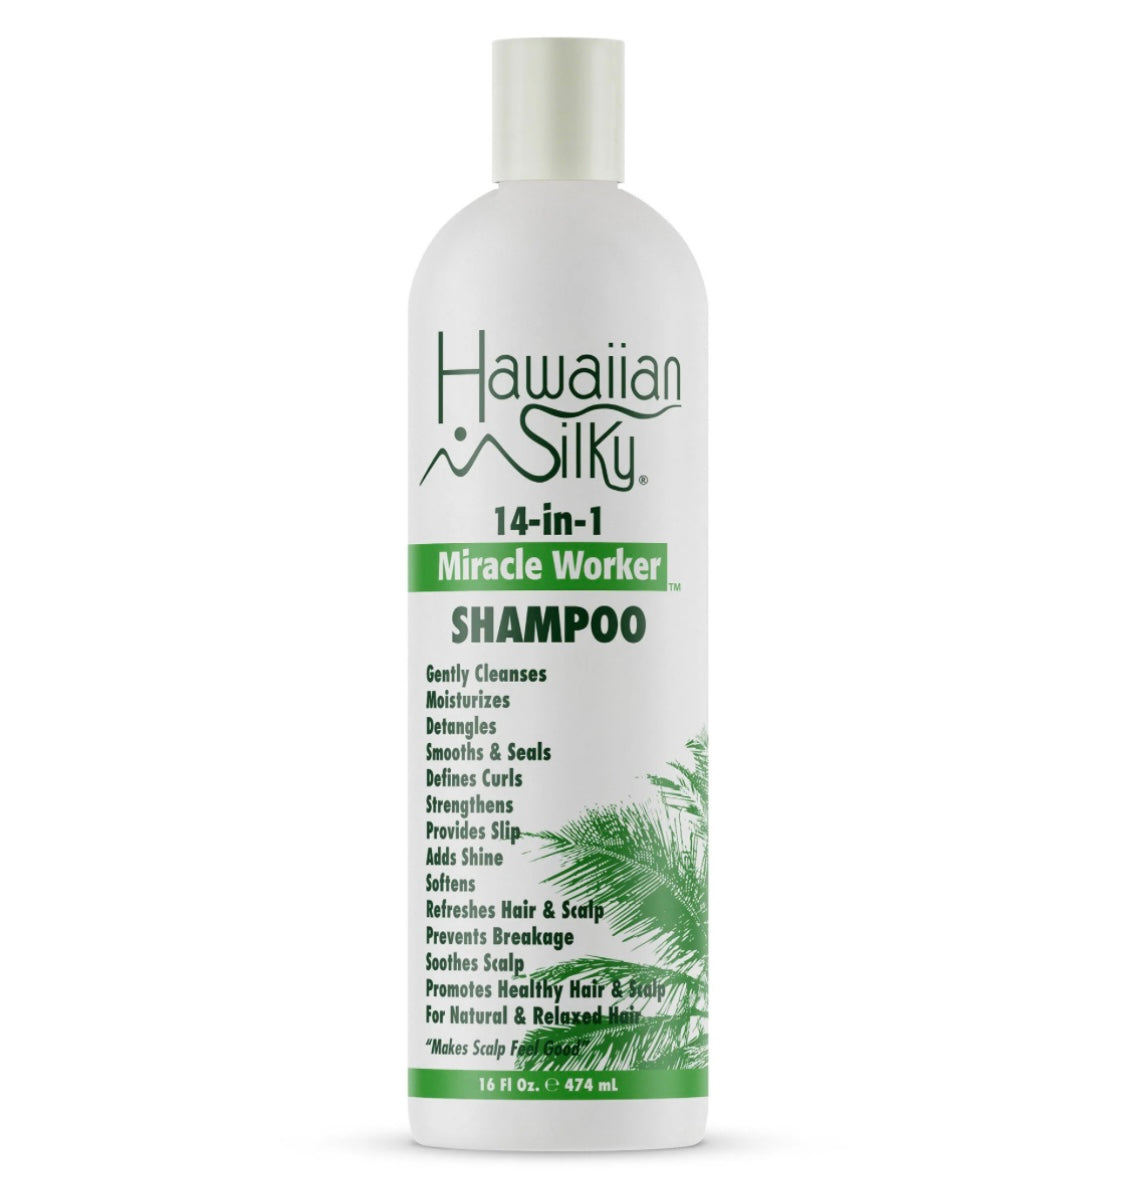 Hawaiian Silky Miracle Worker Shampoo 16 Oz.